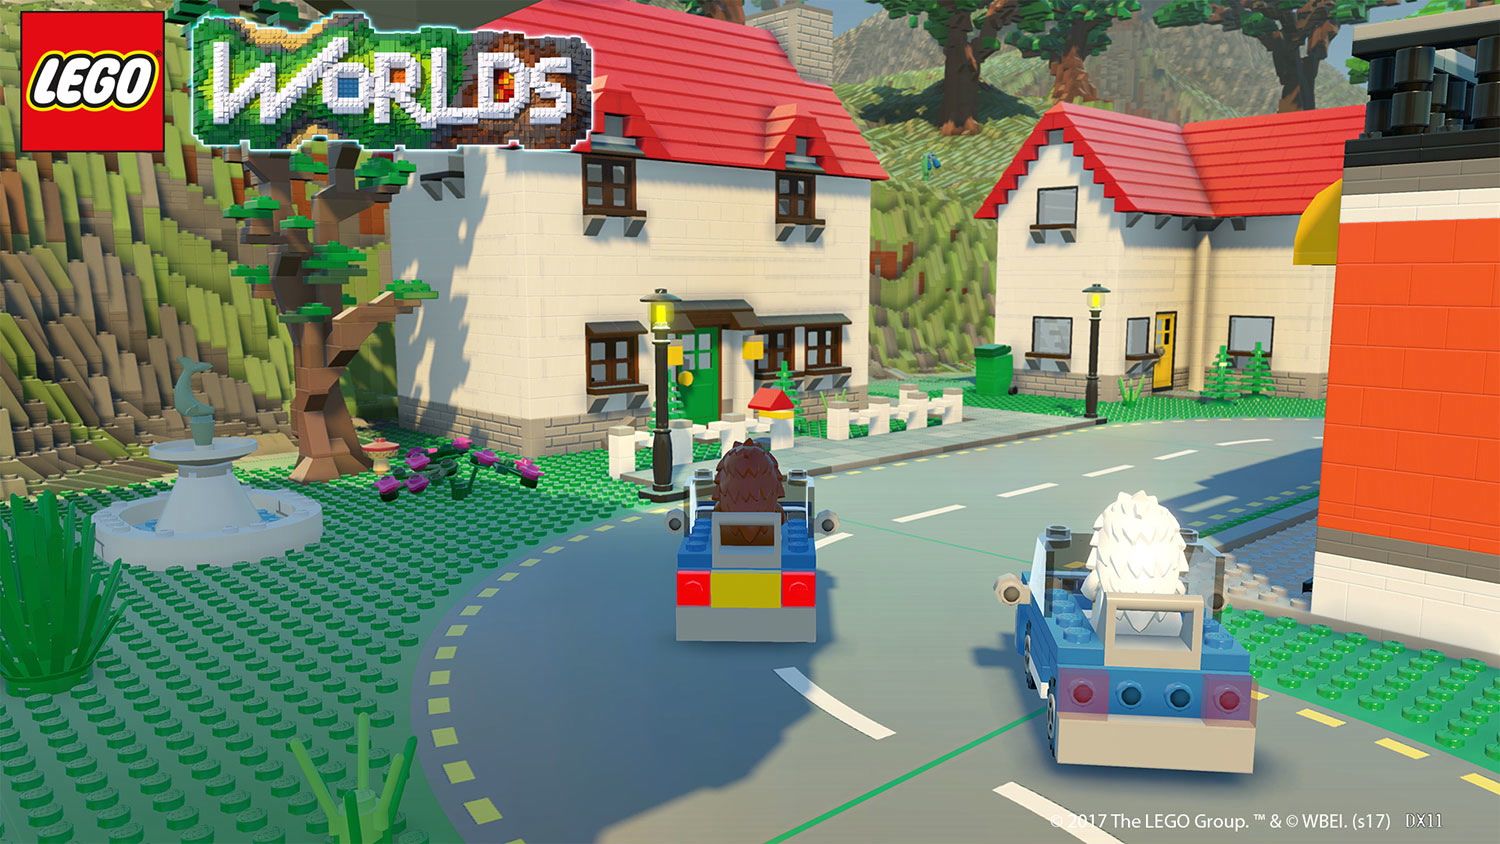 Sautez à bord d'un bolide et parcourrez vos créations dans LEGO Worlds